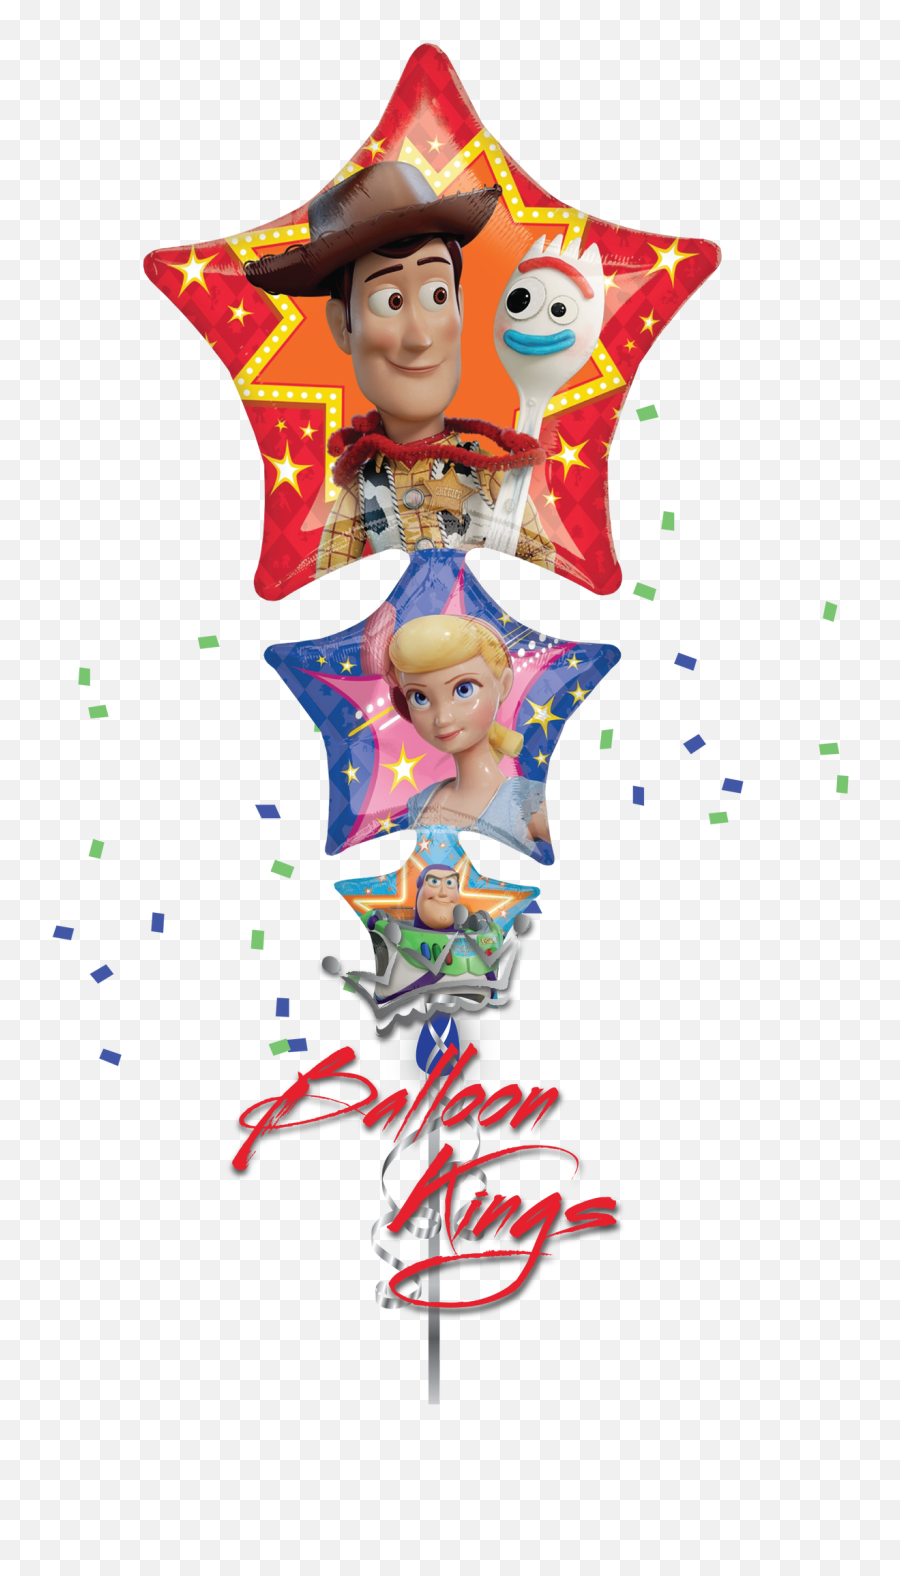 Toy Story 4 - Globos De Toy Story 4 Png,Toy Story 4 Png